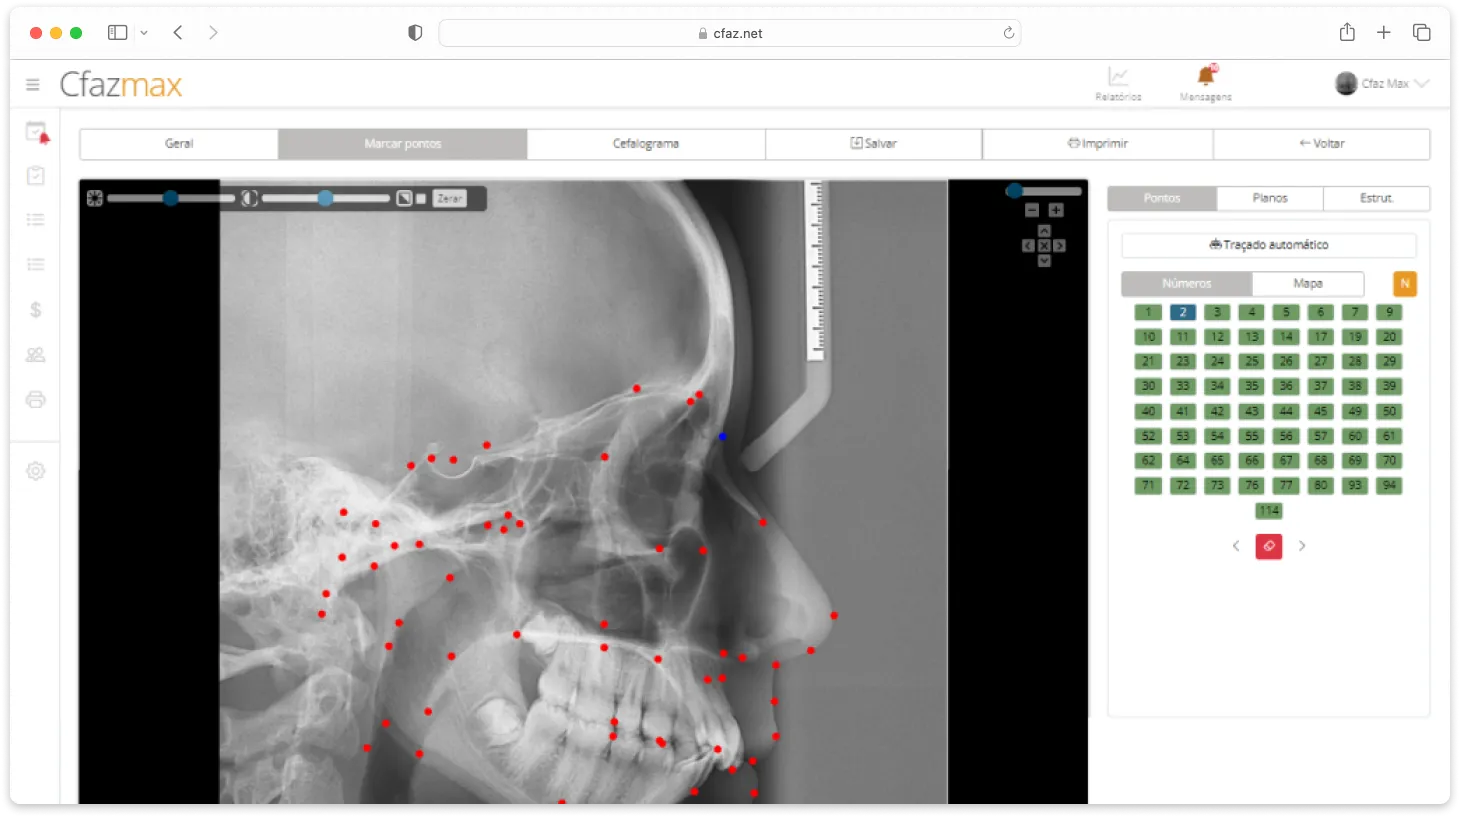 Tela do sistema Cfaz.net com um exame de cefalometria